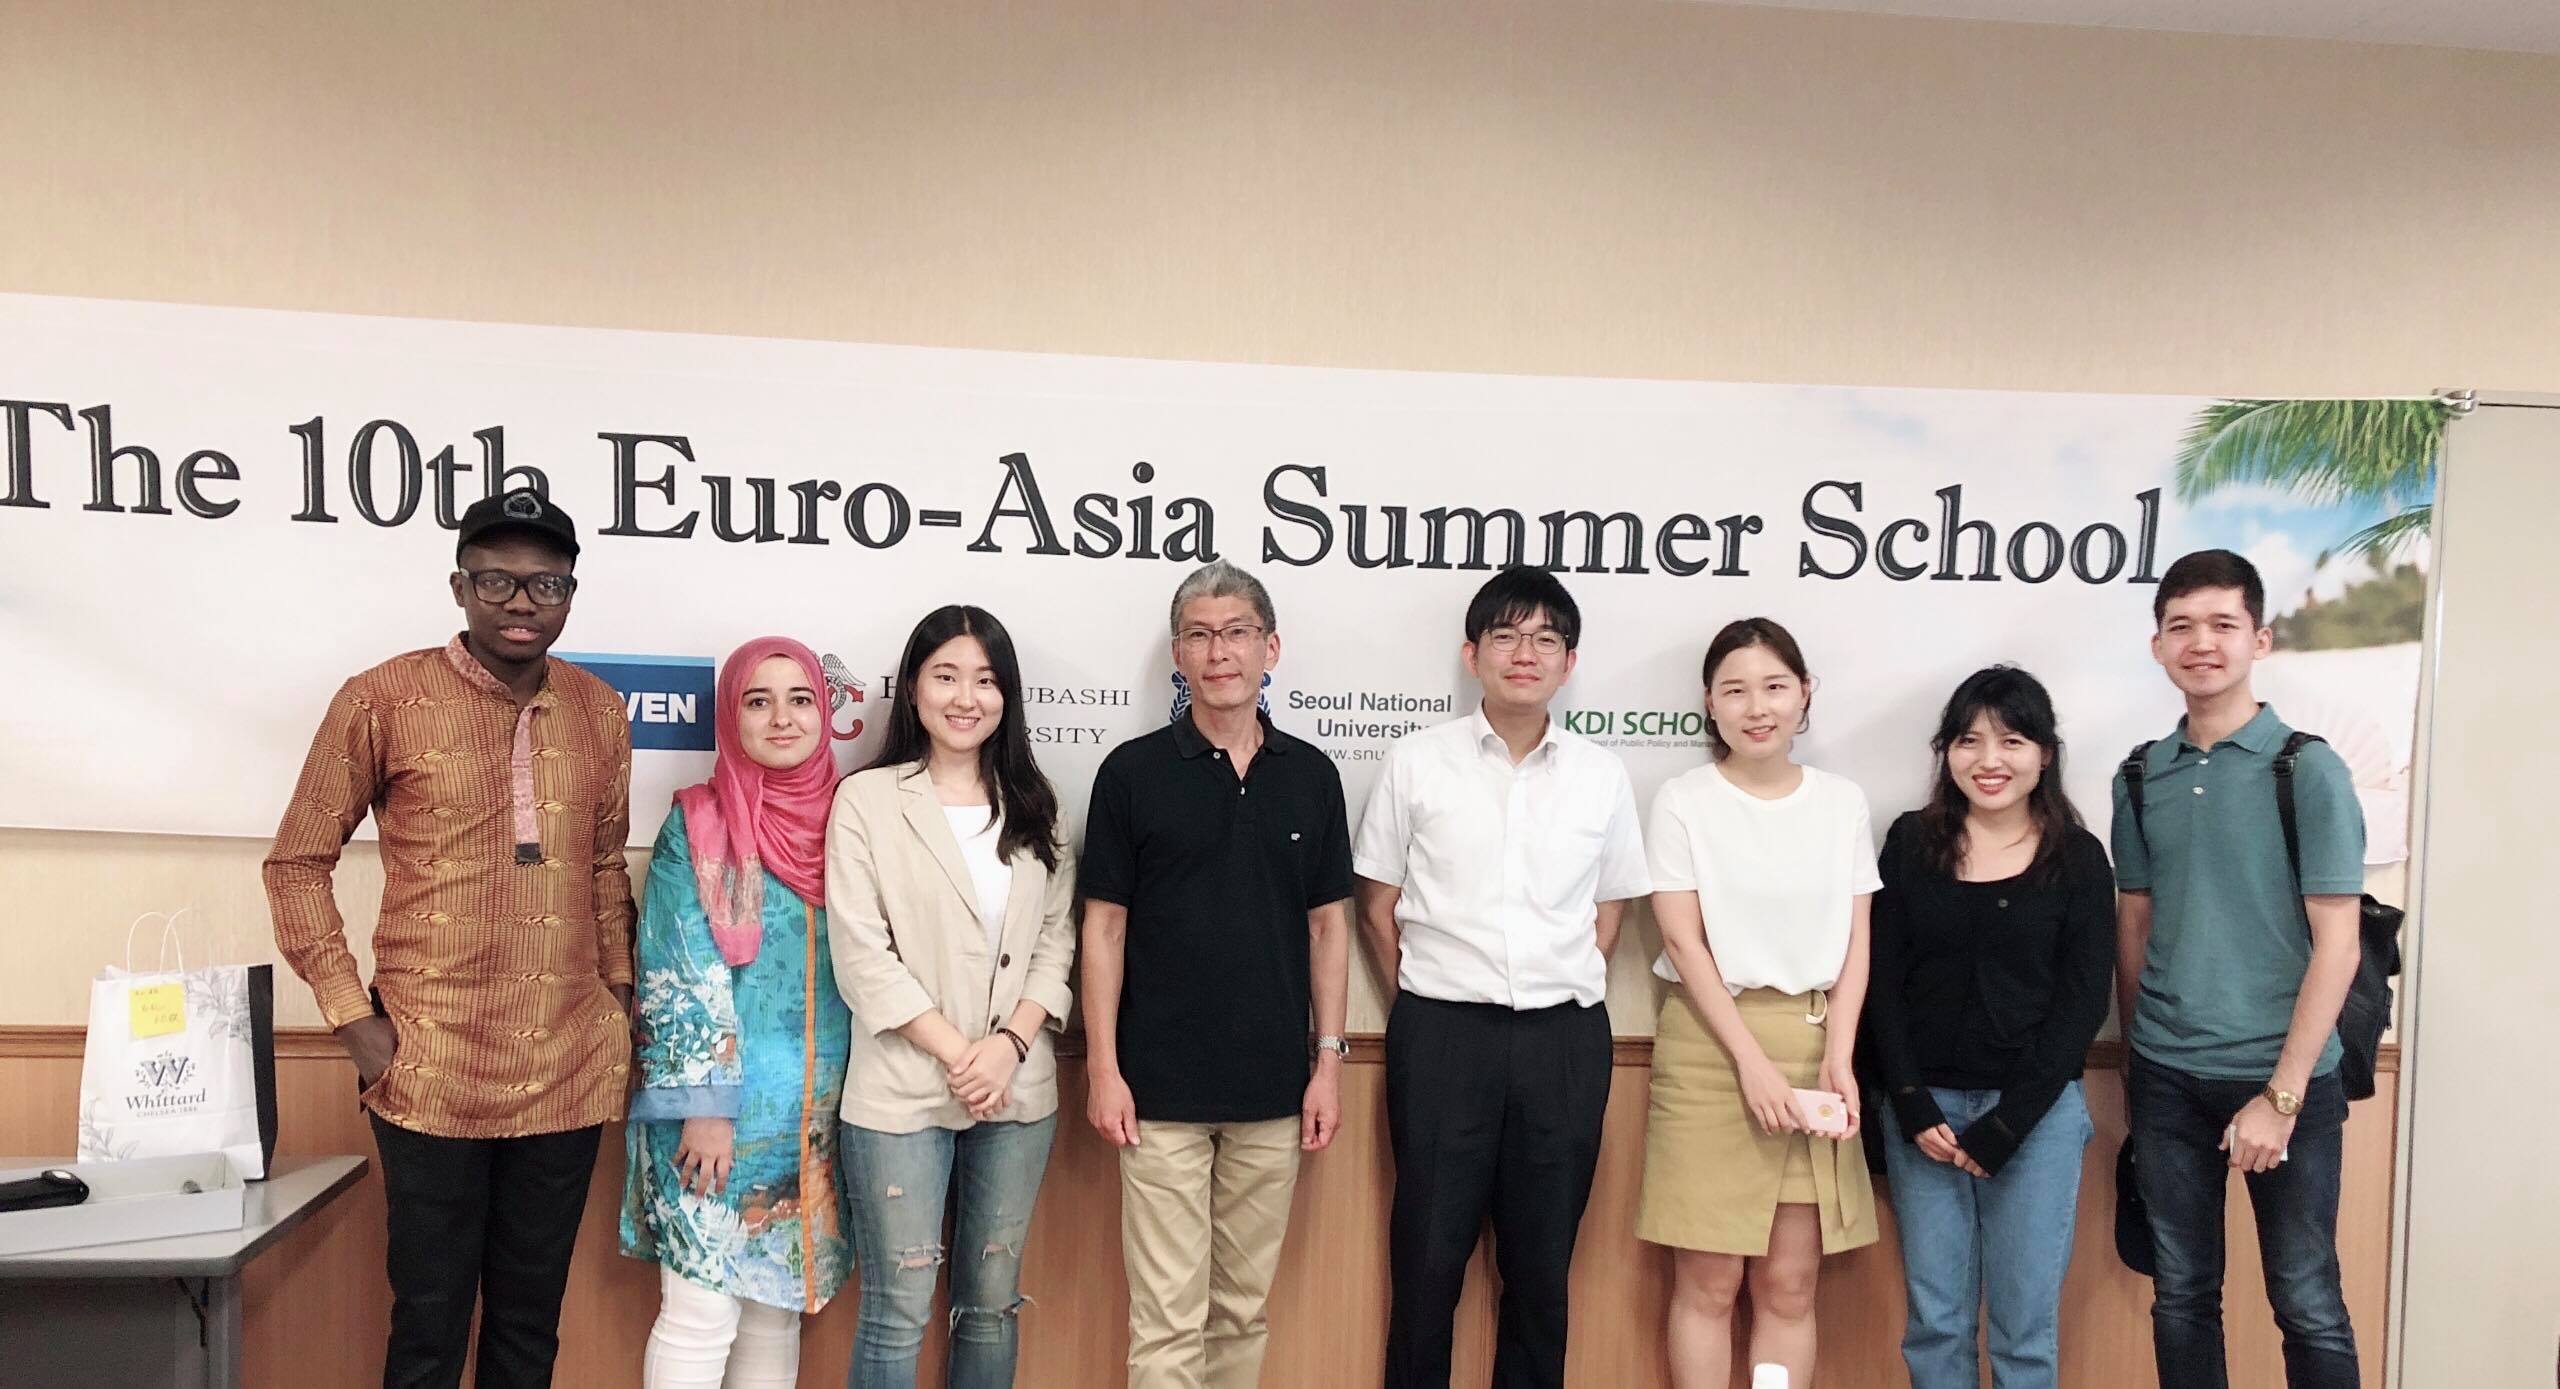 KDI School’s Euro-Asia Summer Program celebrates 10th anniversary